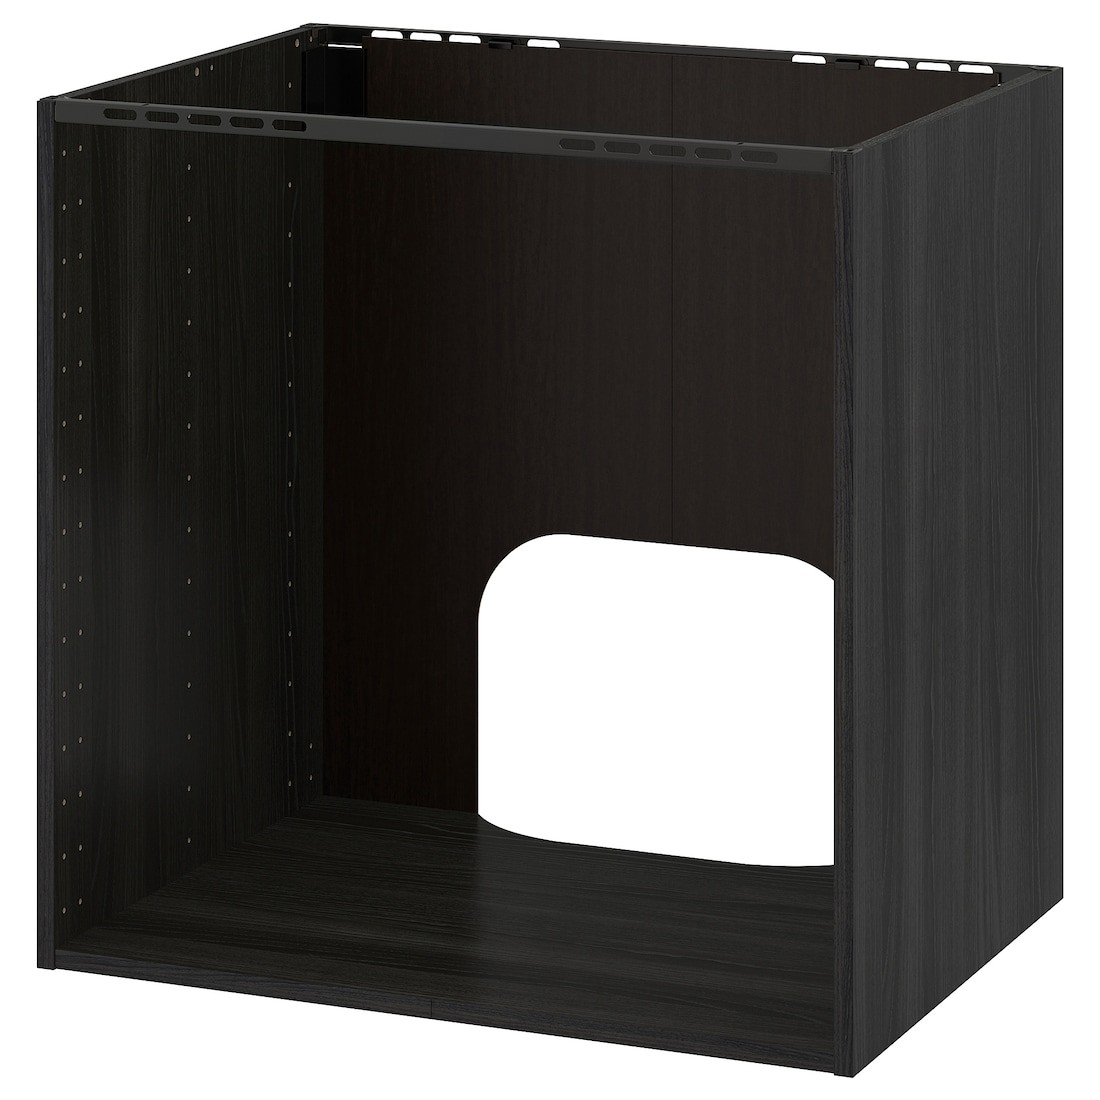 IKEA METOD МЕТОД Підлогова шафа для духовки / мийки, імітація дерева чорний, 80x60x80 см 80215474 802.154.74